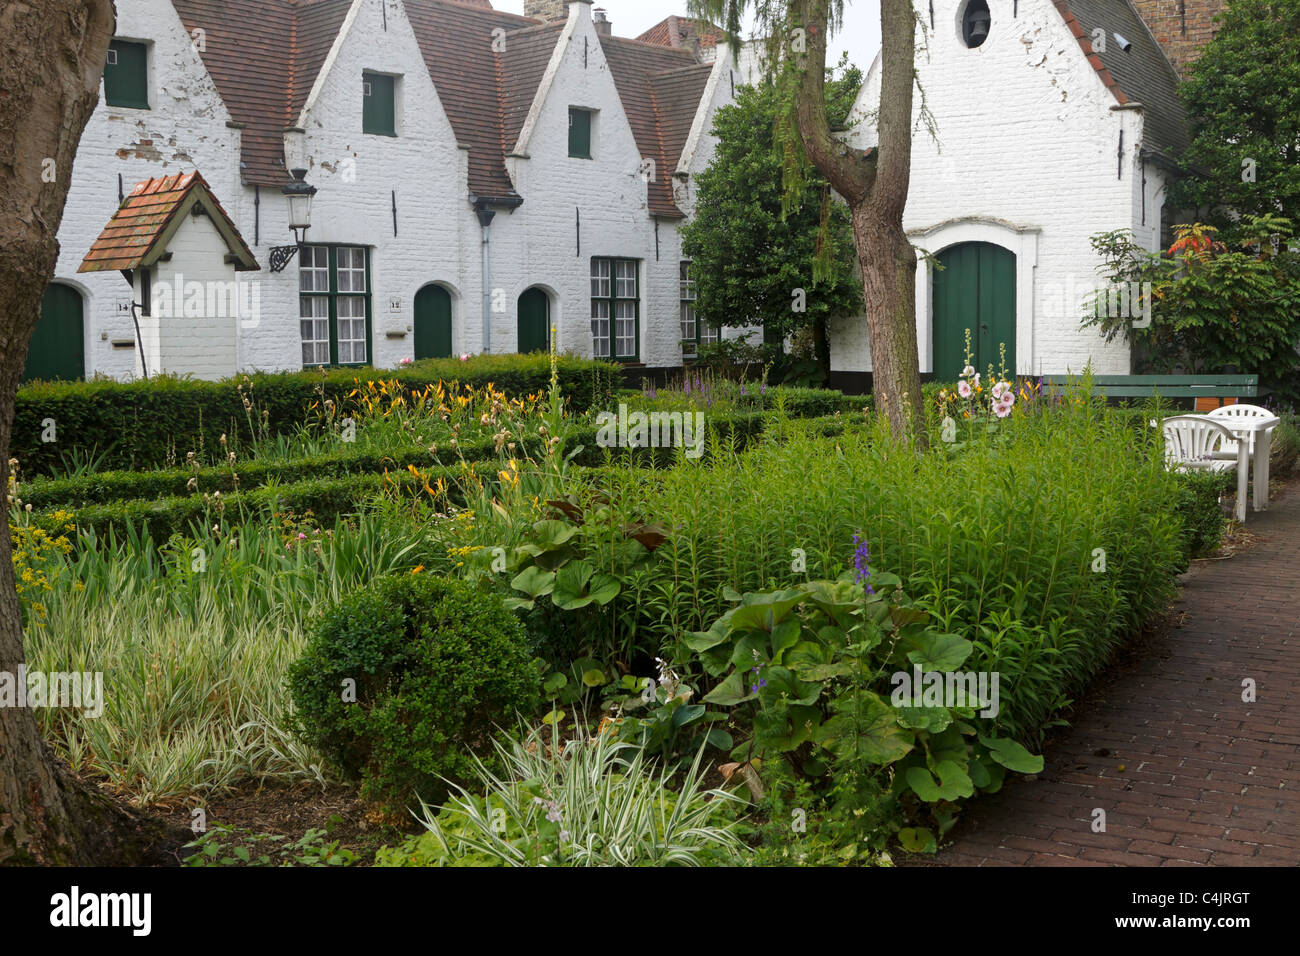 Godshuis de Meulenaere, Bruges, Belgique. La jolie cour avec jardin. Banque D'Images